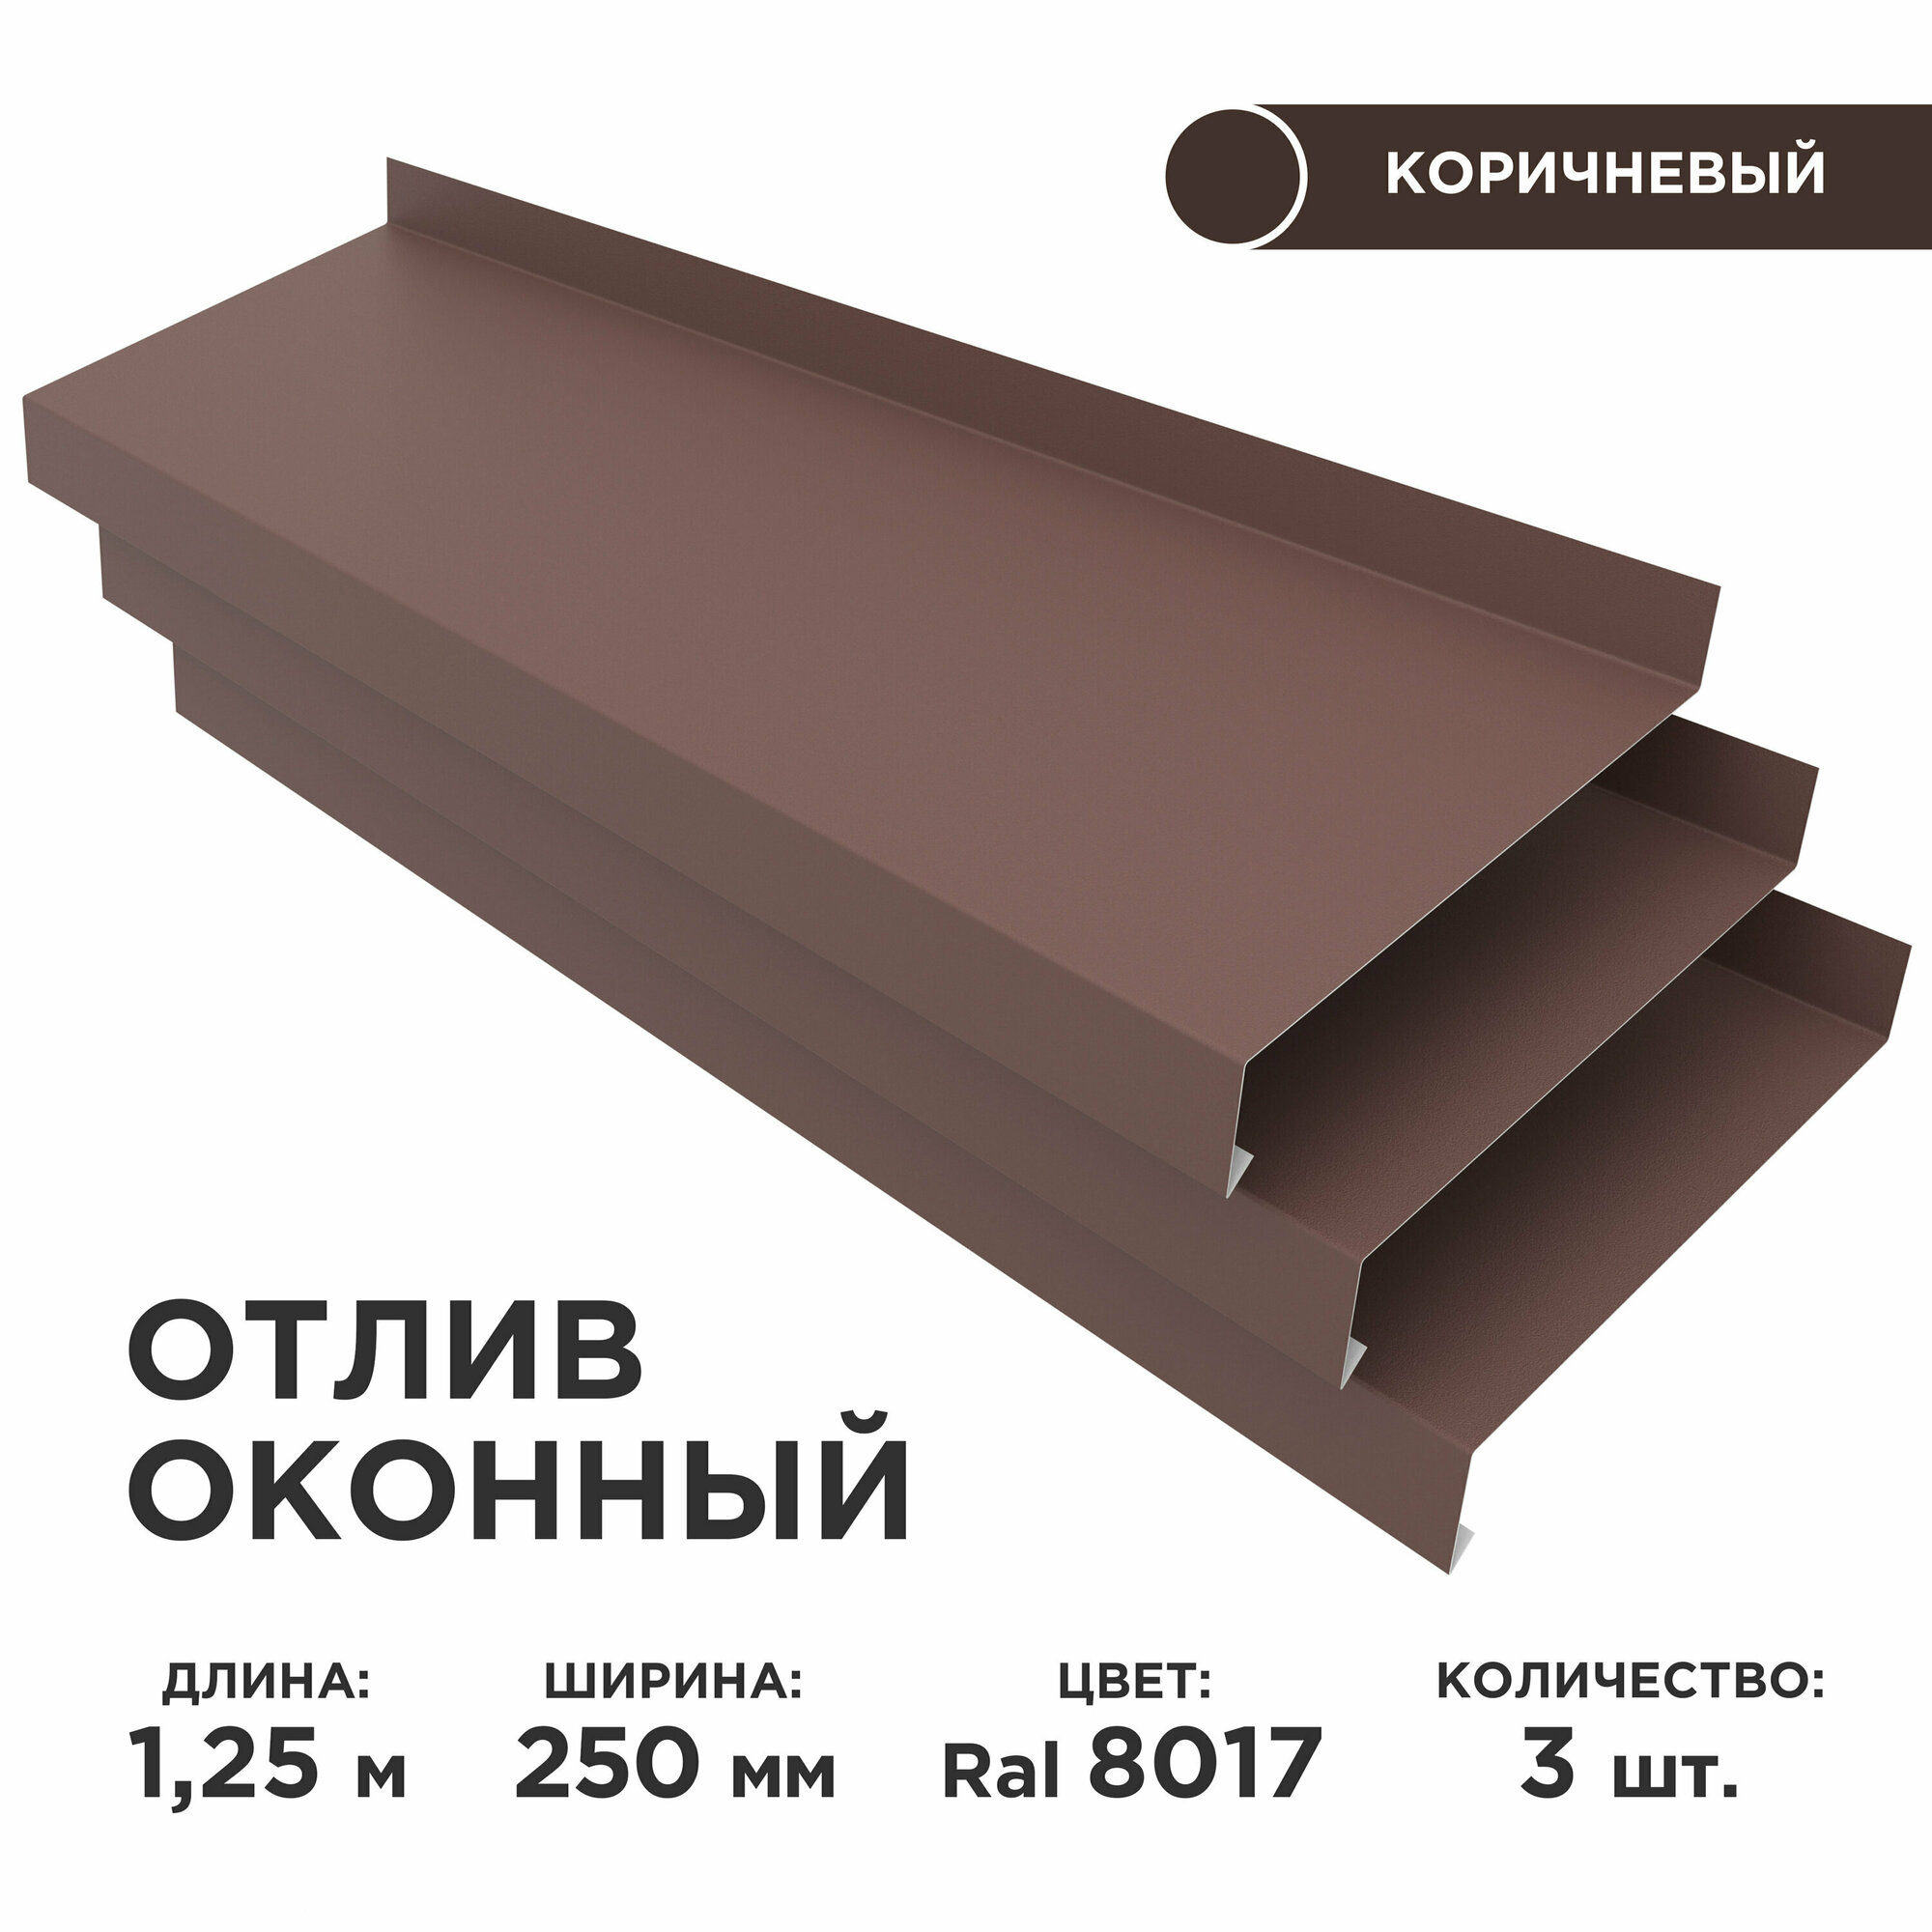 Отлив оконный ширина полки 250мм/ отлив для окна / цвет коричневый(RAL 8017) Длина 1,25м, 3 штуки в комплекте